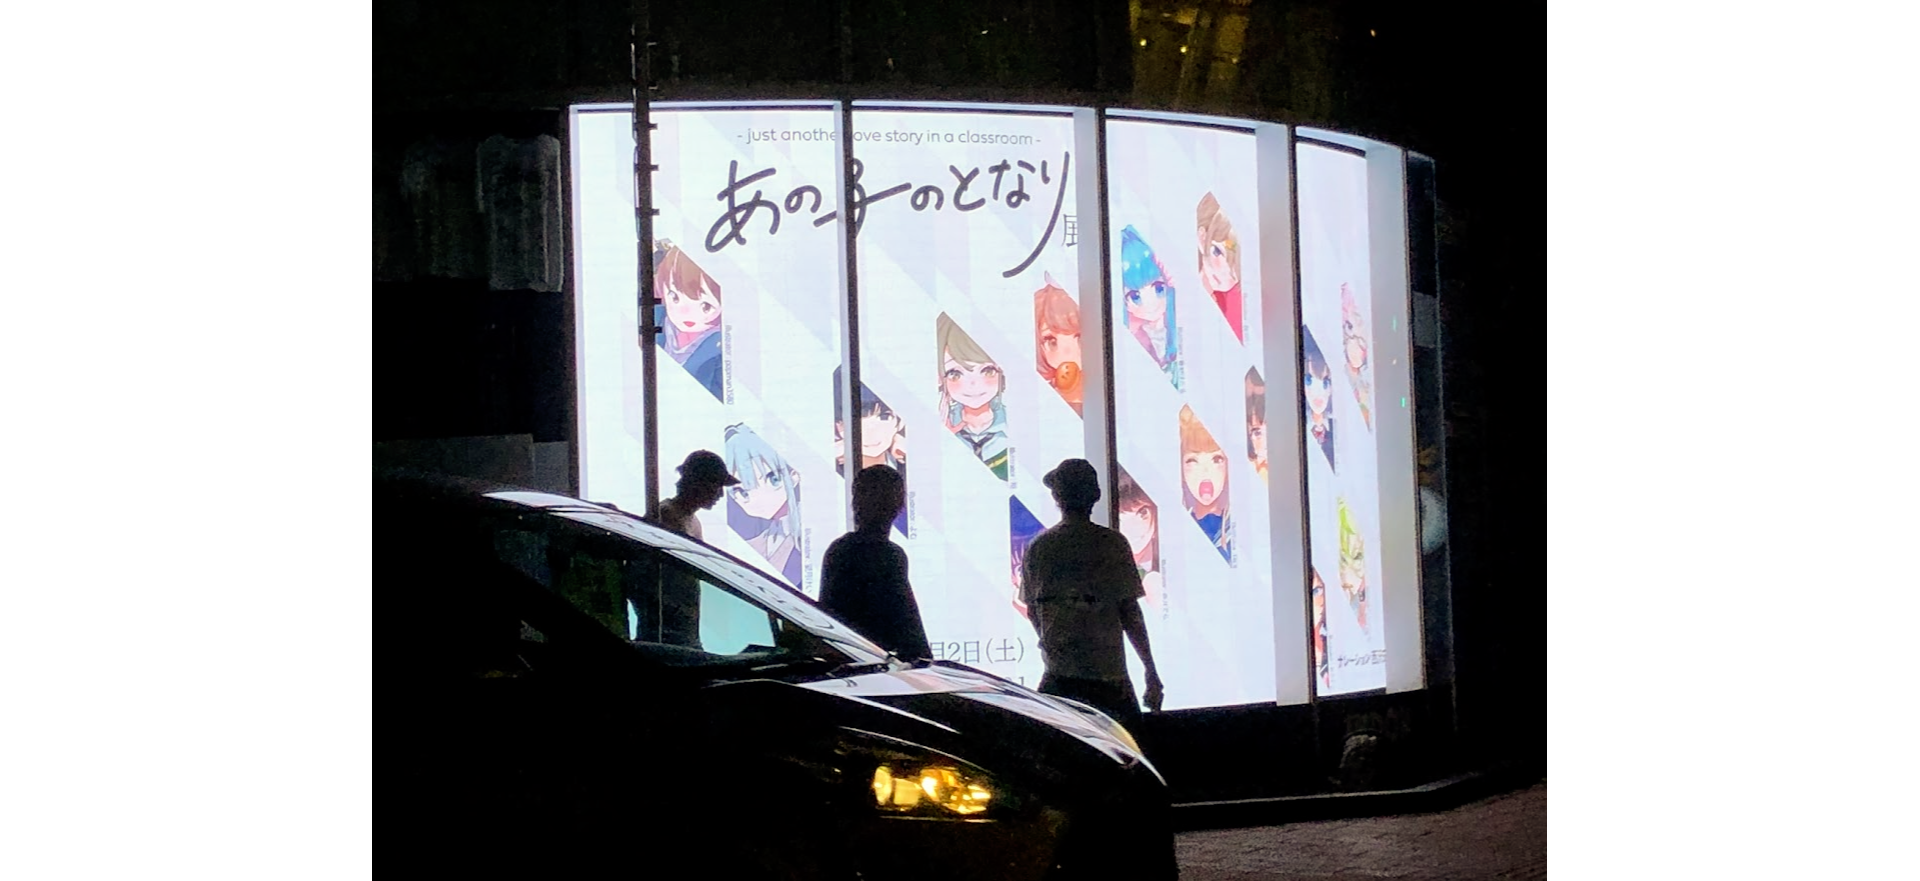 9月26日(日)より3331 Arts Chiyoda(東京都千代田区)を会場に開催される『あの子のとなり』の展覧会、クリックワークス株式会社は運営協力を行っております。のサブ画像3_MITSUBA VISION AKIHABARA